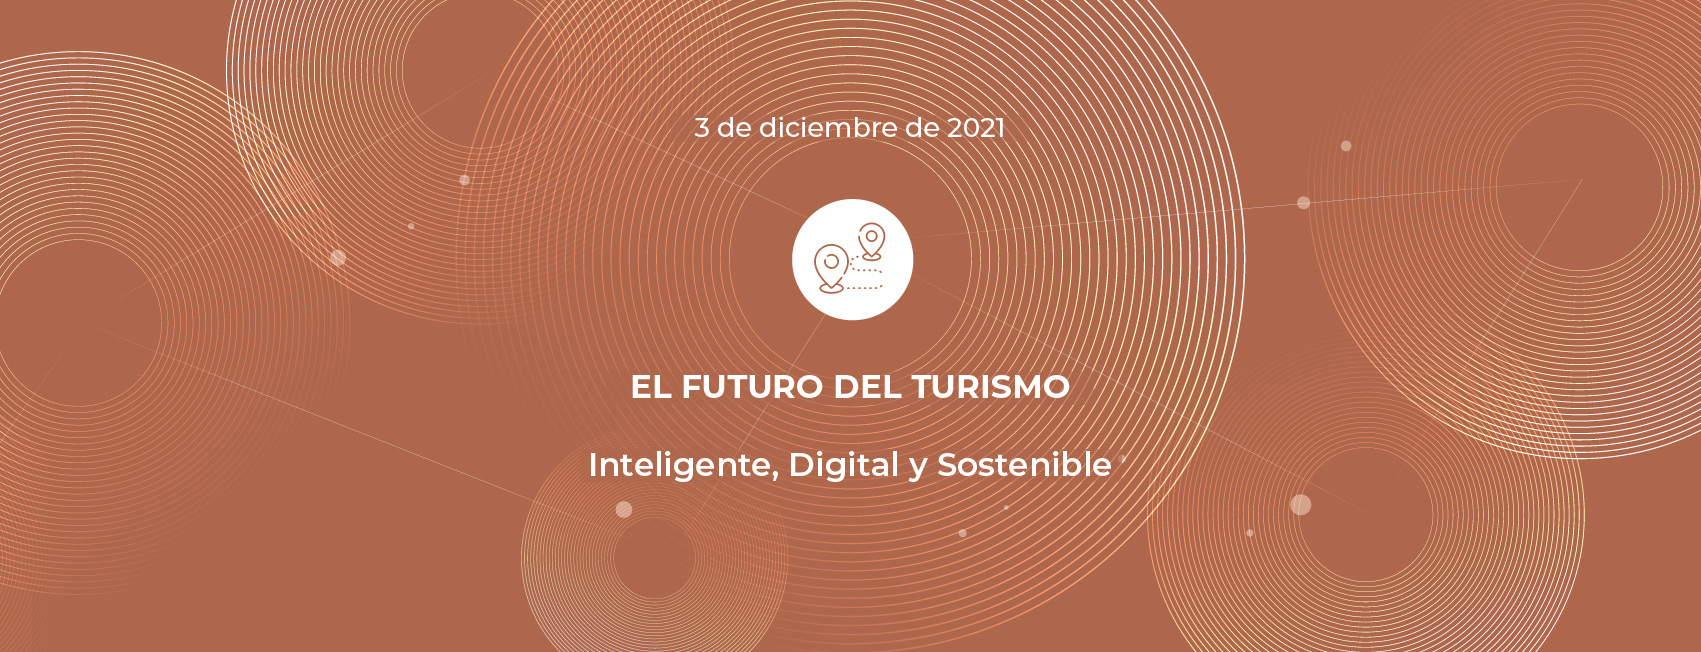 El Futuro del turismo: Inteligente, Digital y sostenible